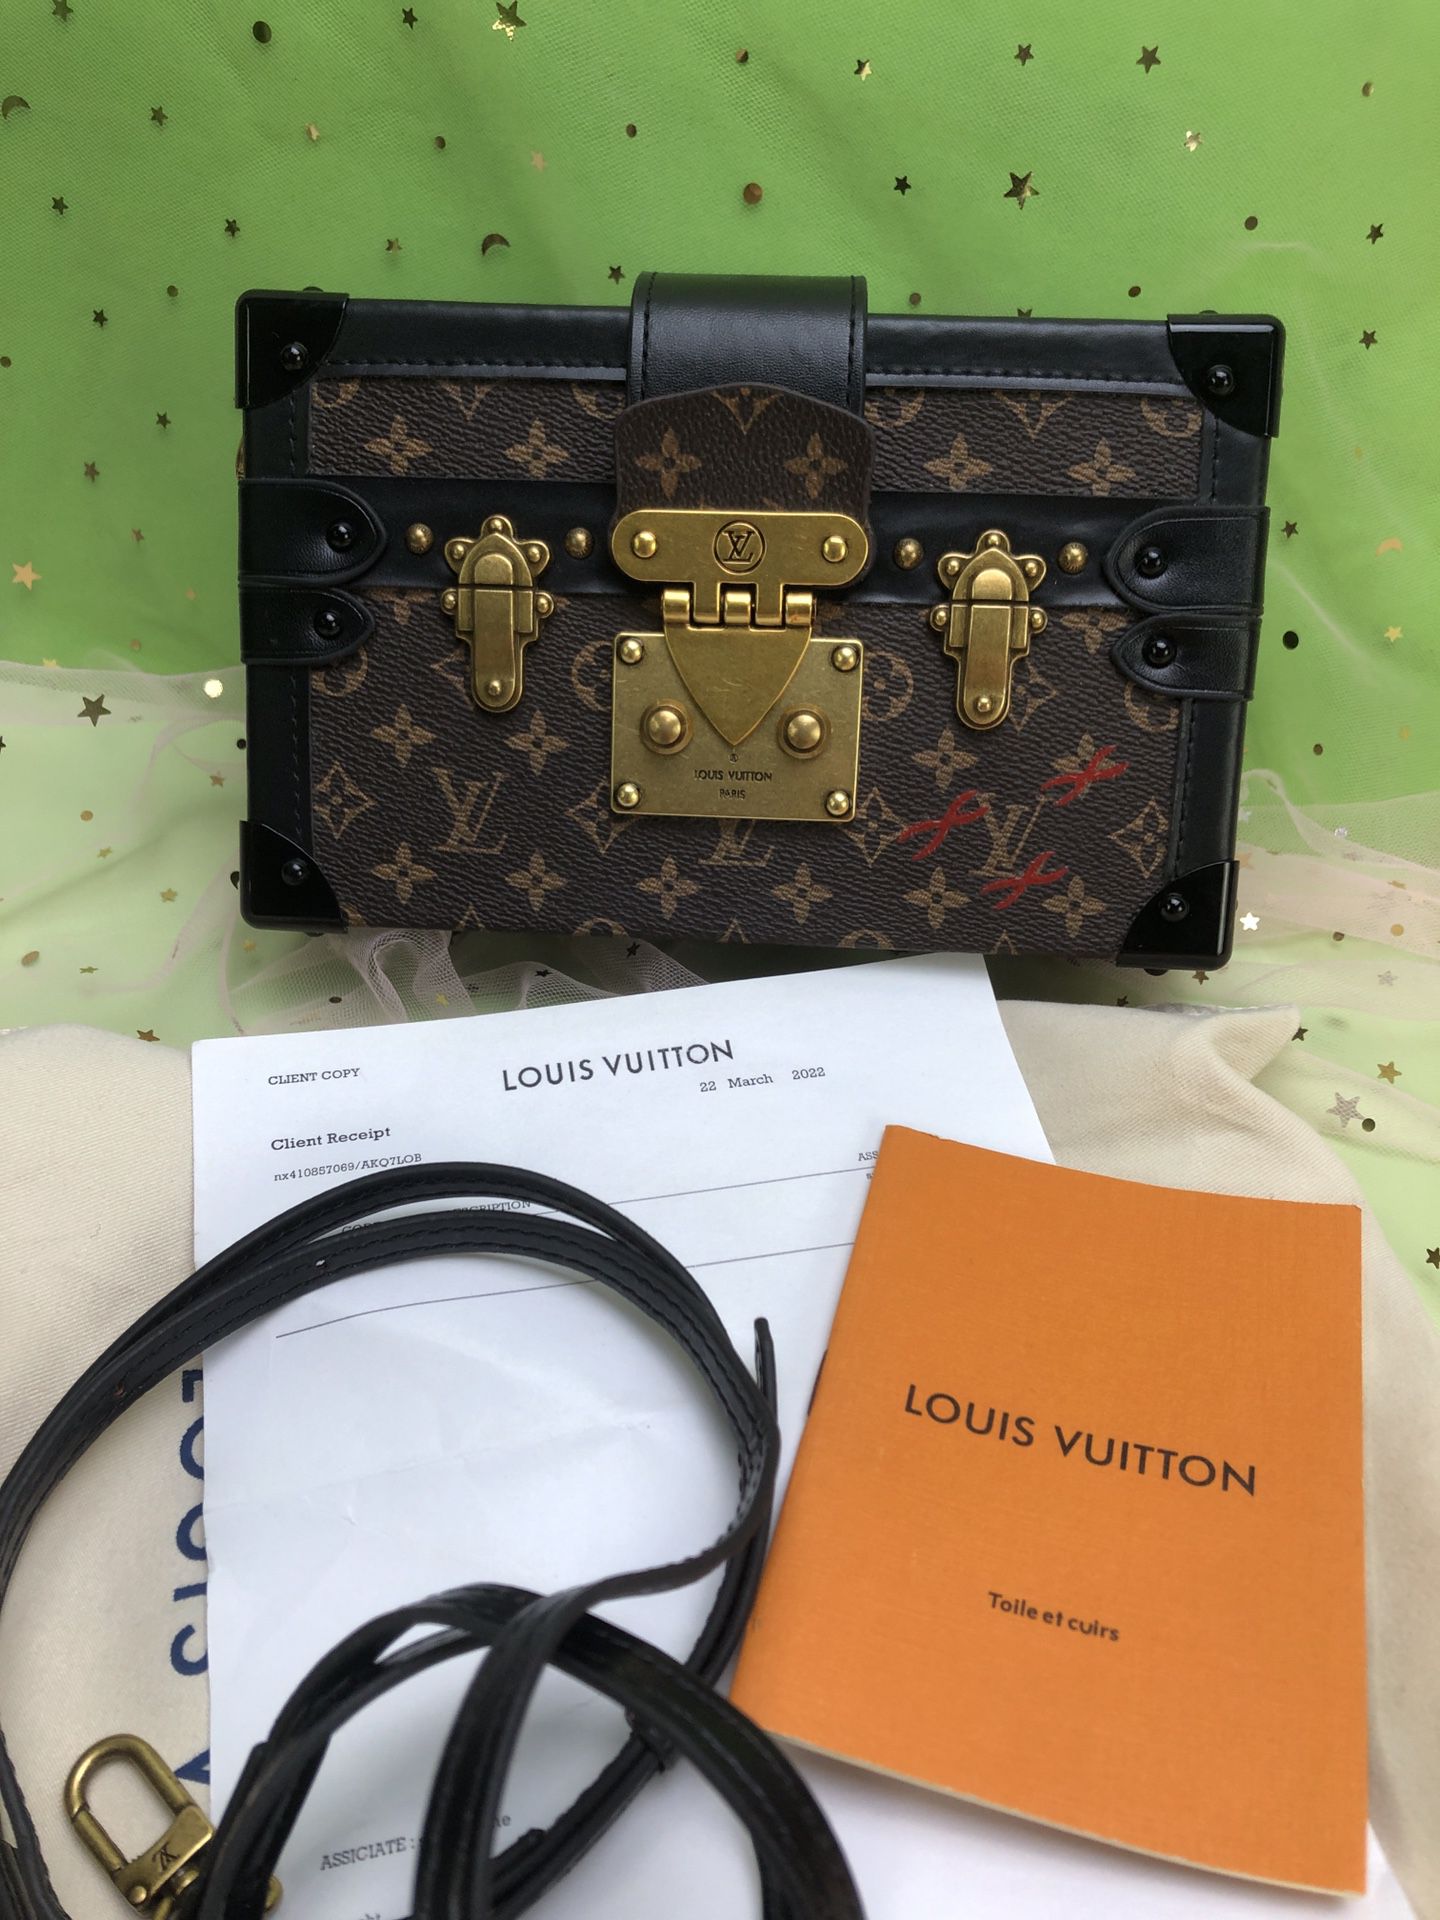 Louis Vuitton bag old flower waist bag brown shoulder bag handbag female bag  for Sale in Richmond, VA - OfferUp